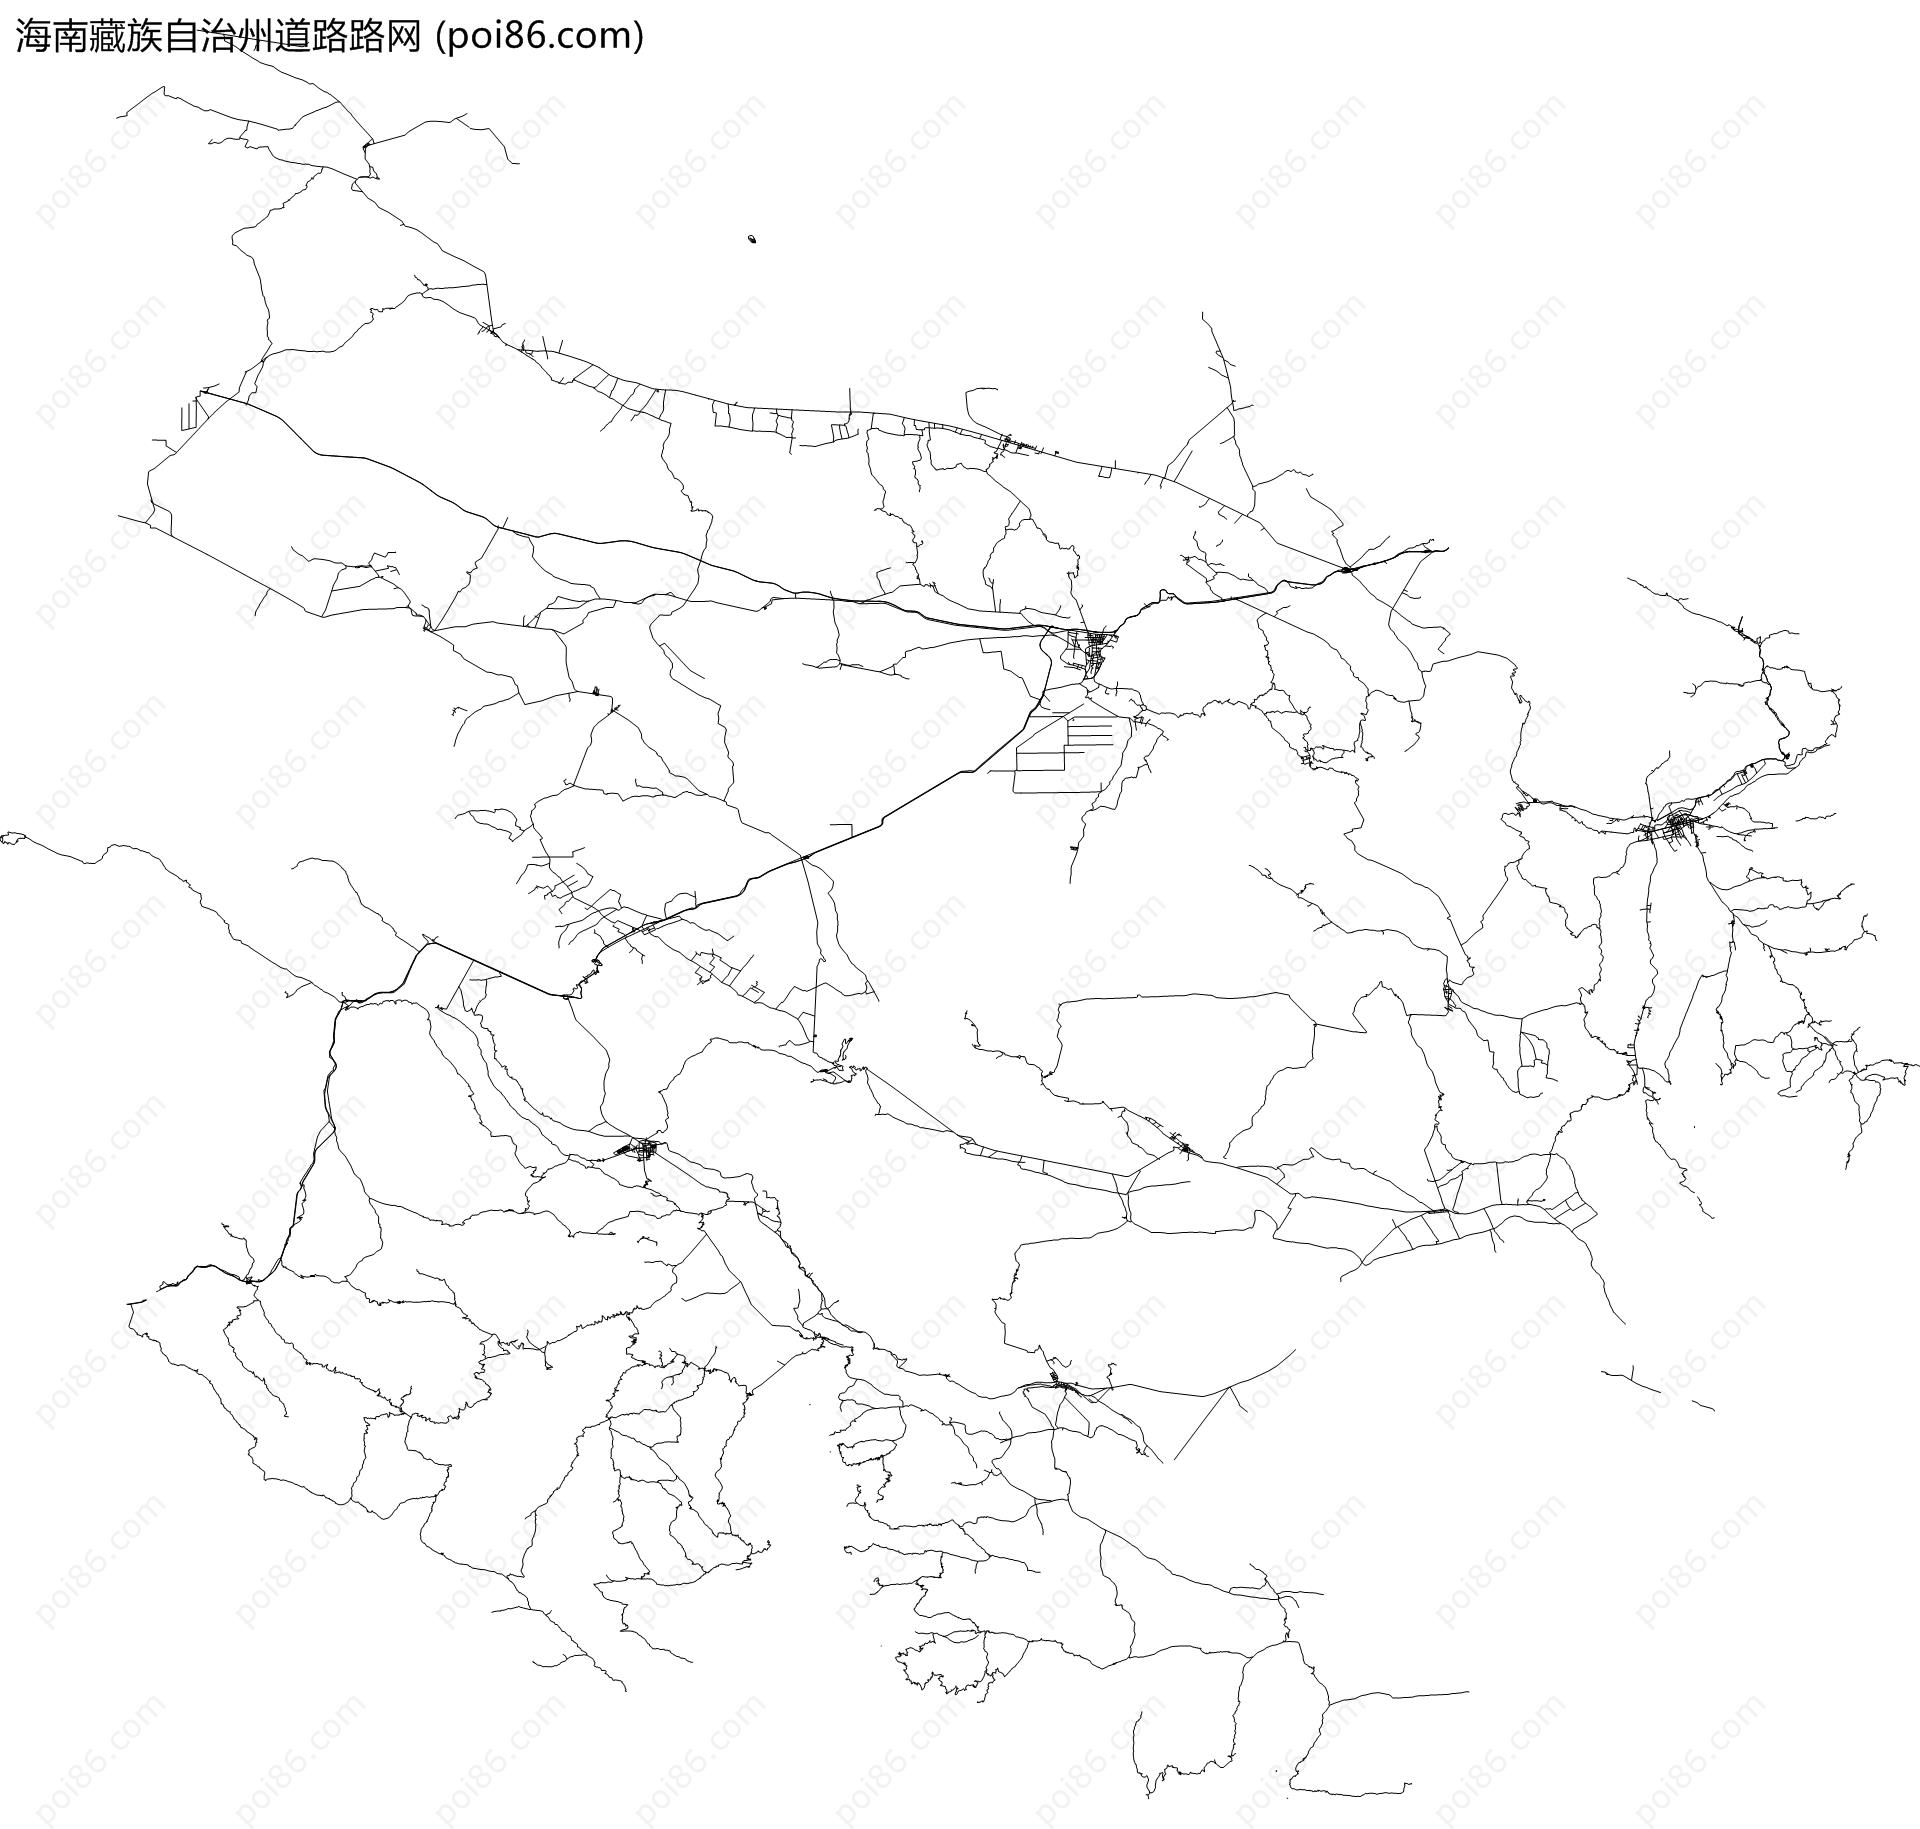 海南藏族自治州道路路网地图